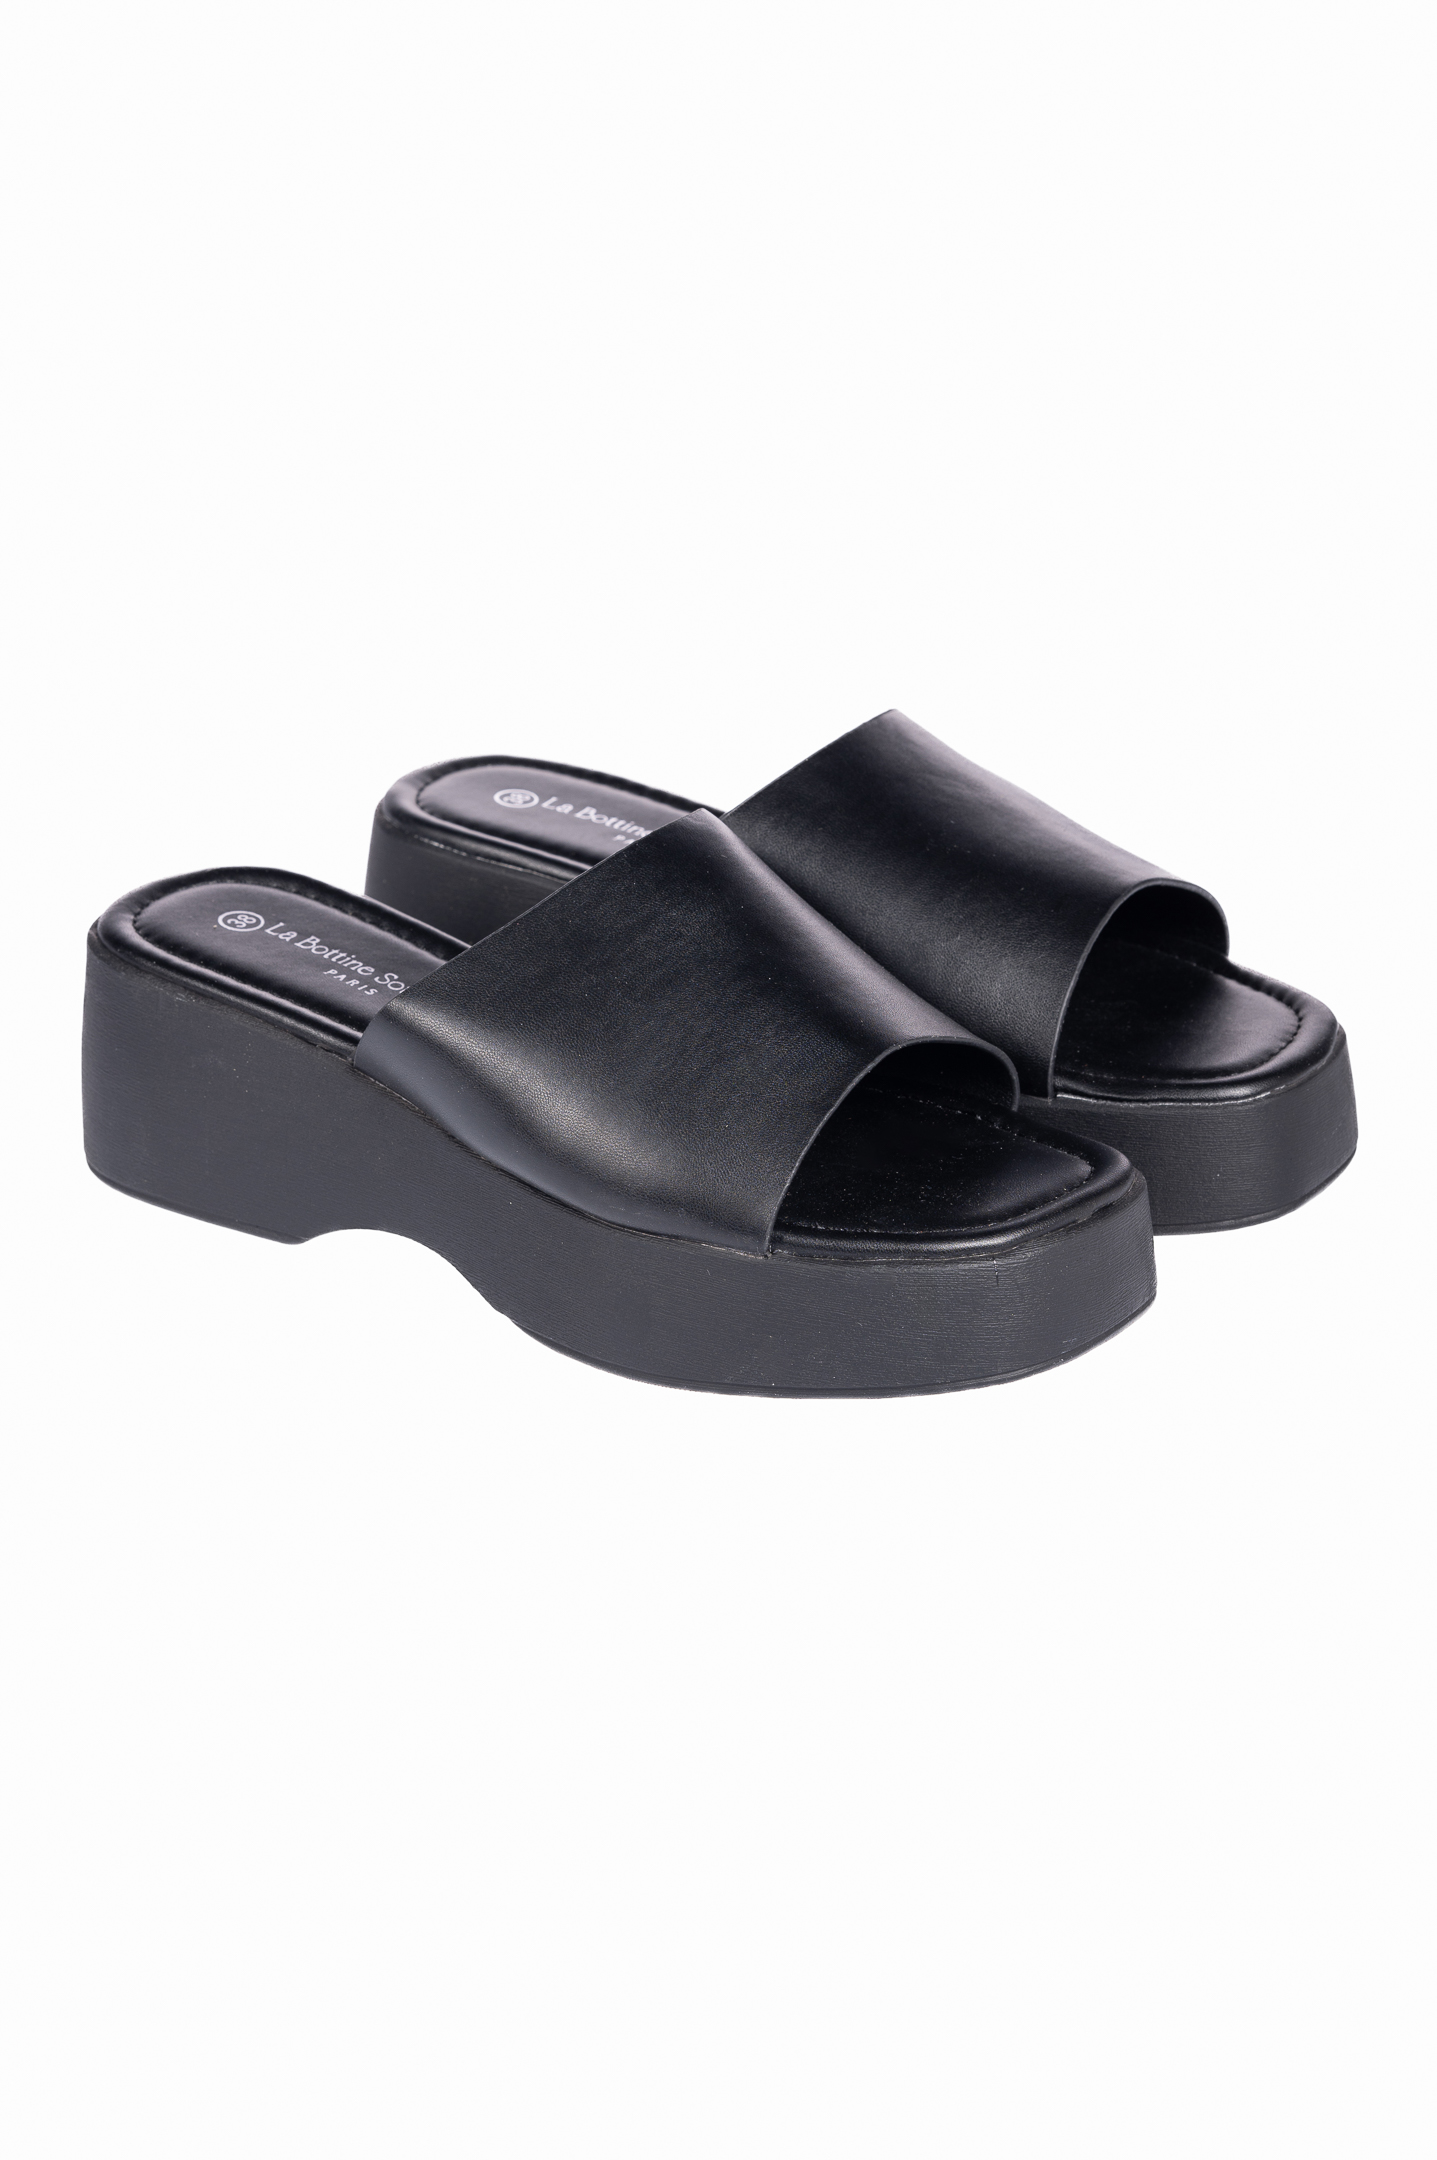 Παπούτσια > Πλατφόρμες Πλατφόρμες ανοιχτές με φάσα - Μαύρο